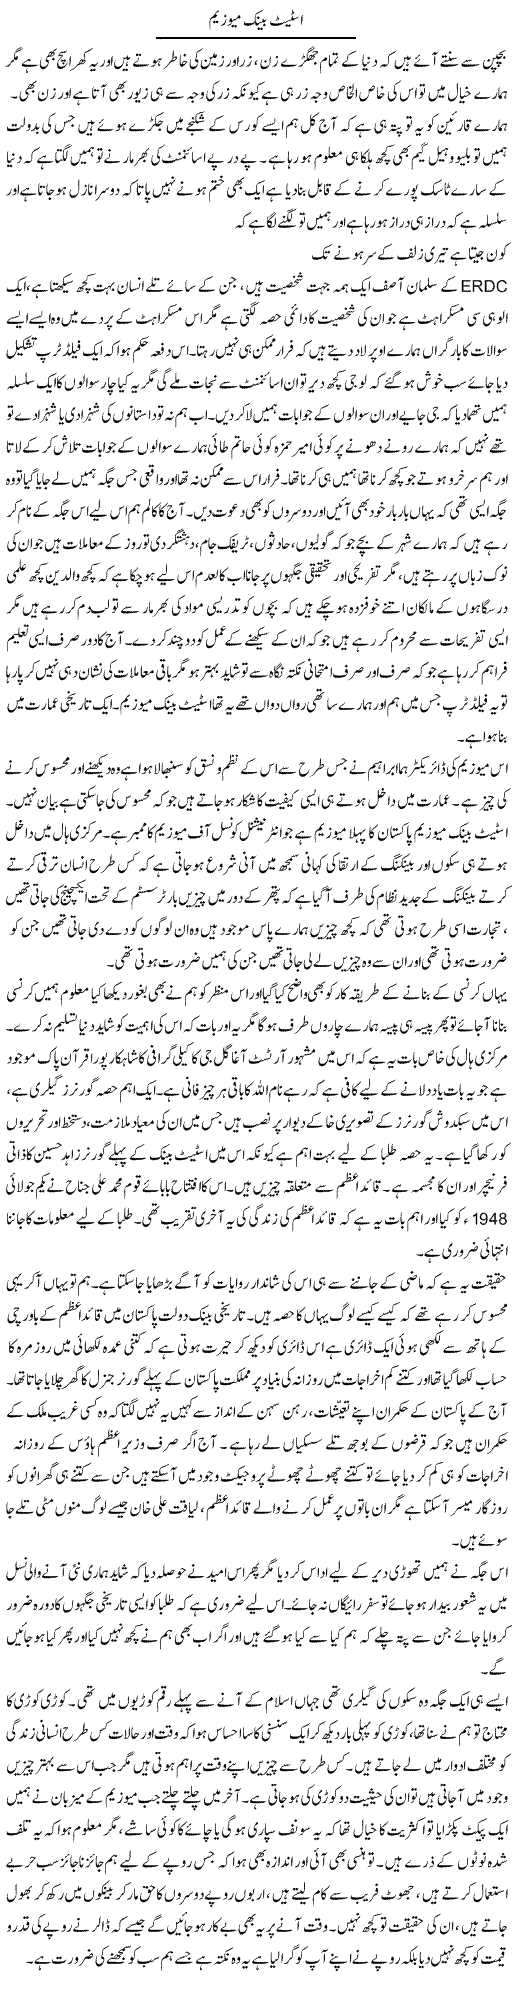 State Bank Museum | Fatima Naqvi | Daily Urdu Columns